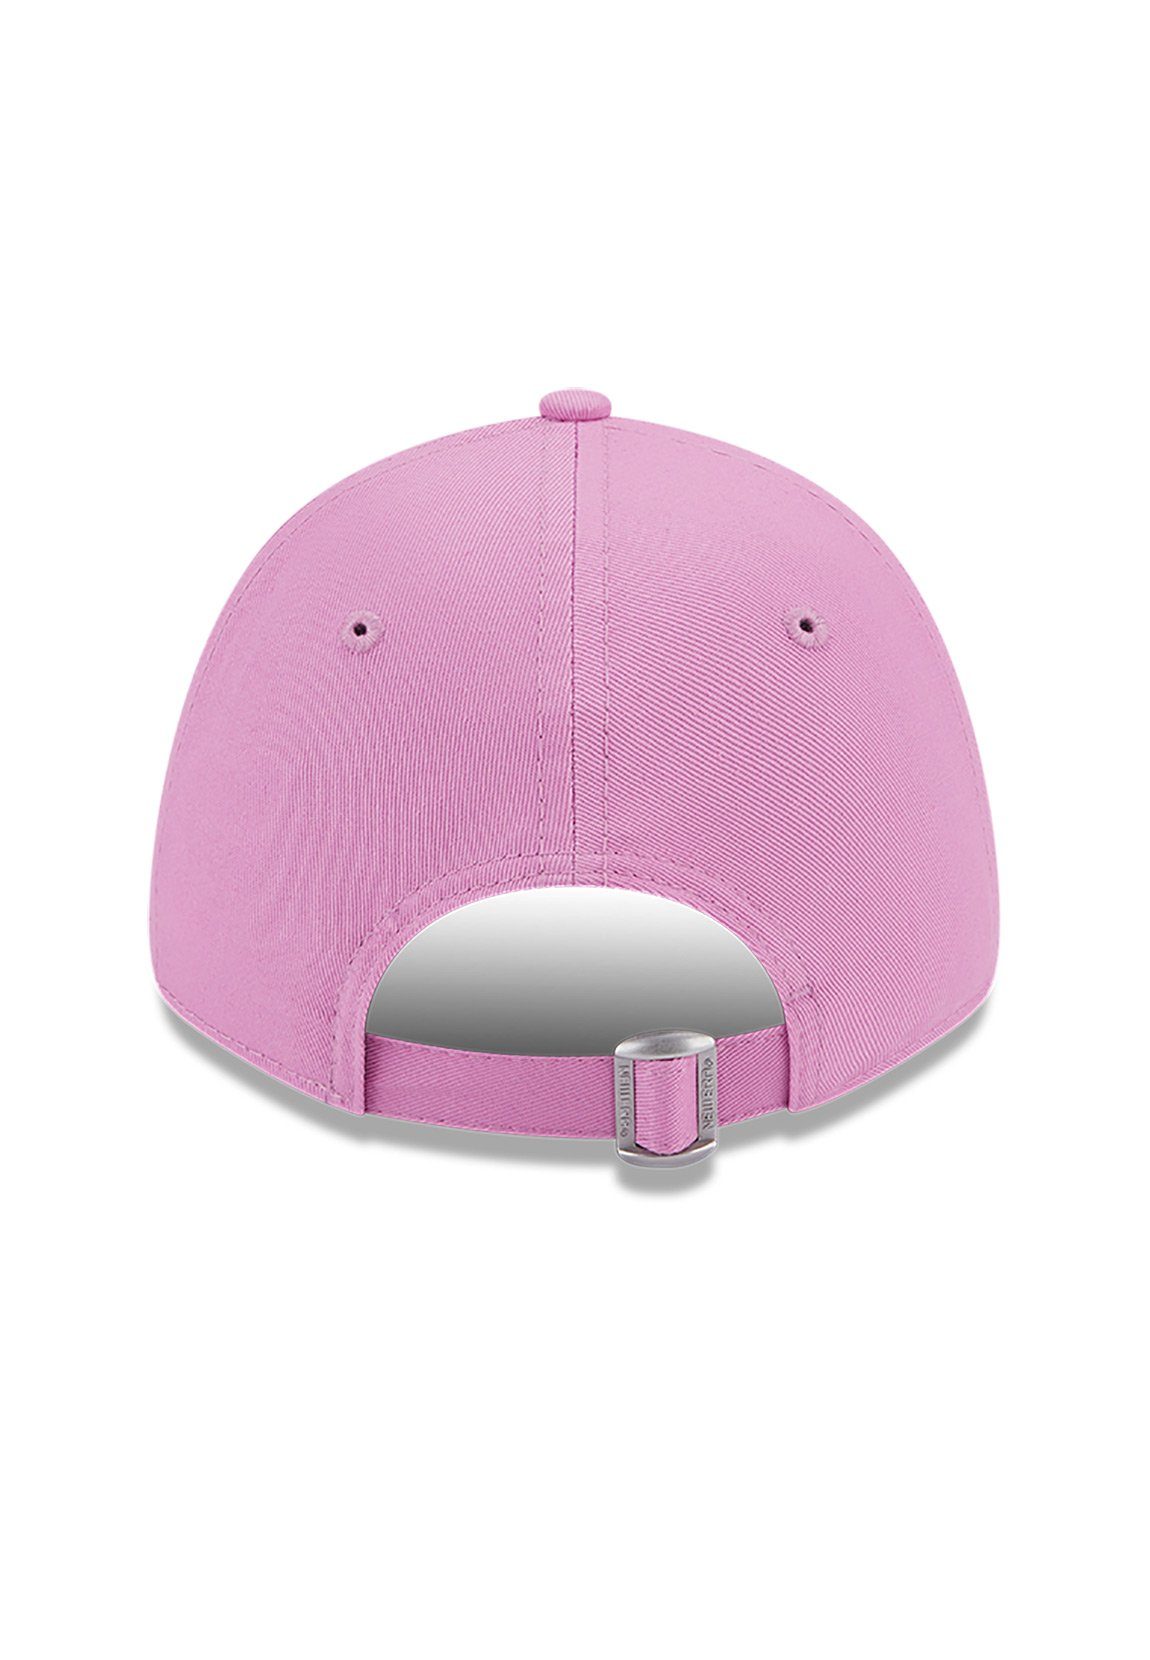 9Forty Era Era League Cap Damen Wmns YANKEES Adjustable Ess New New Cap Pink NY rosa Baseball